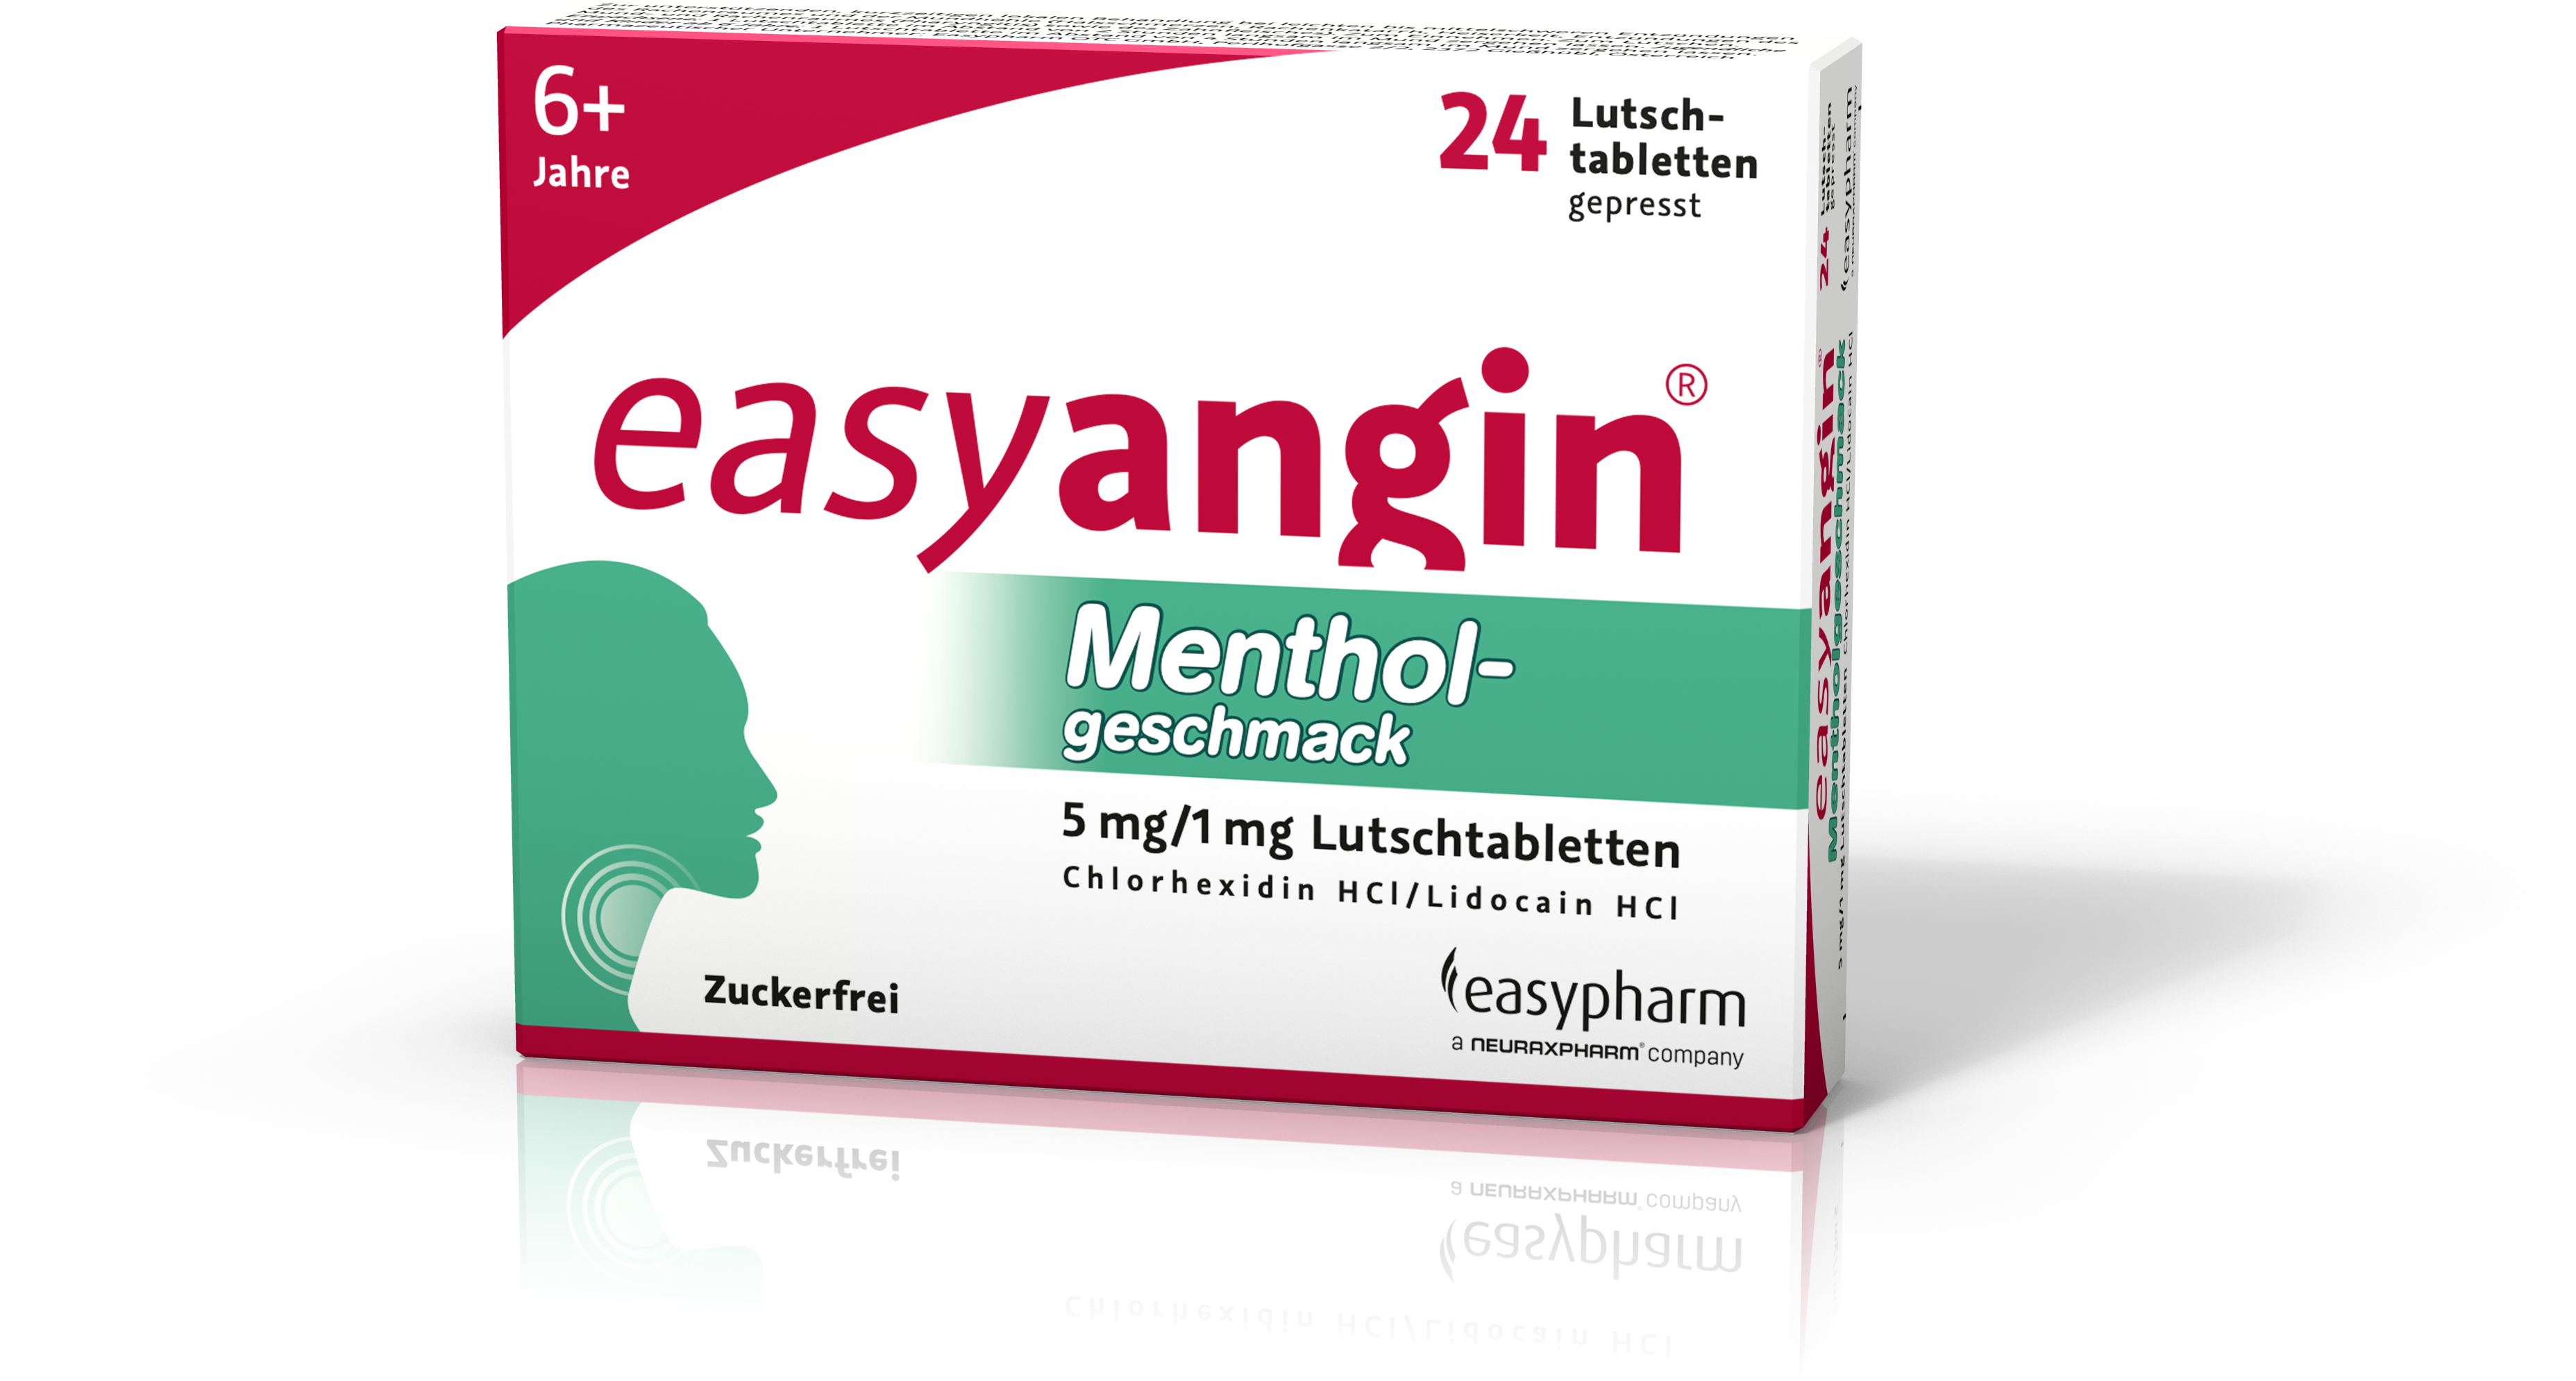 easyangin Mentholgeschmack 5 mg/1 mg - Lutschtabletten